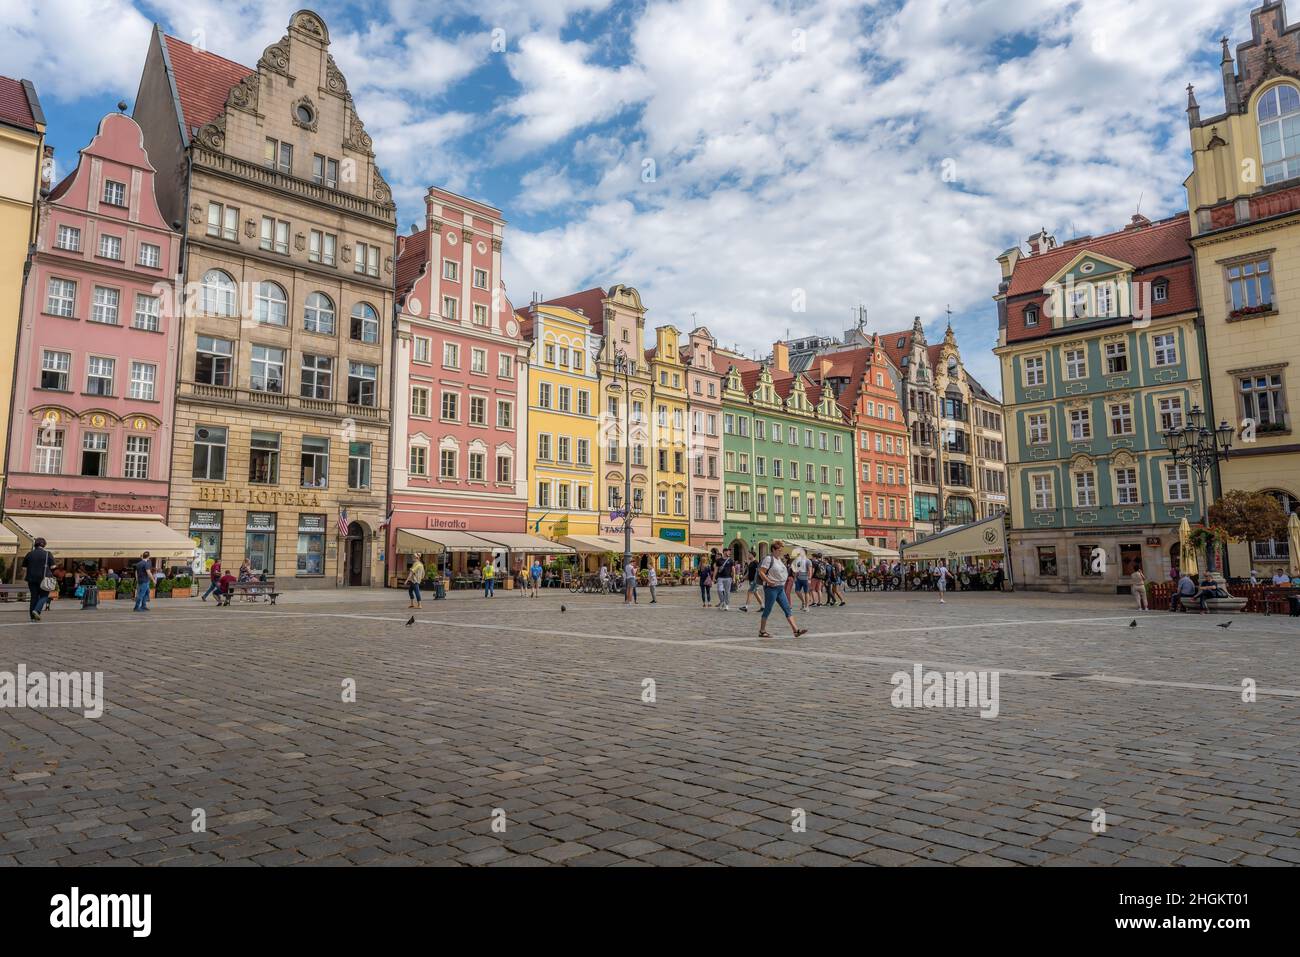 La ville colorée abrite des bâtiments et des restaurants sur la place du marché (place Rynek) - Wroclaw, Pologne Banque D'Images